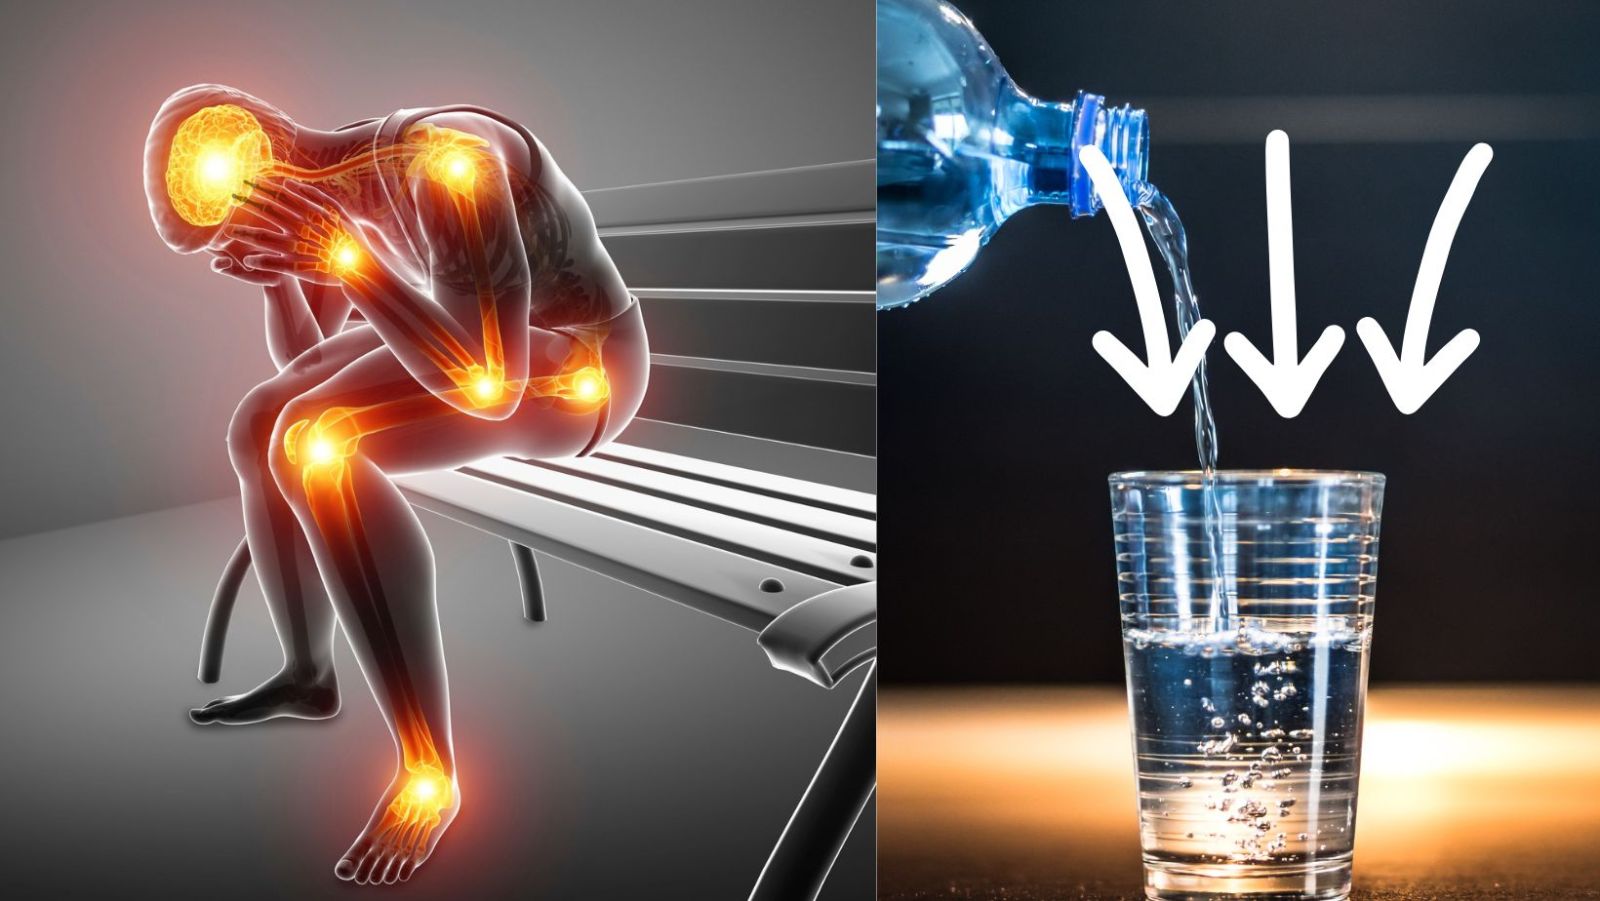 Quelle eau boire quand on a de l'arthrose ? Ce que dit la science